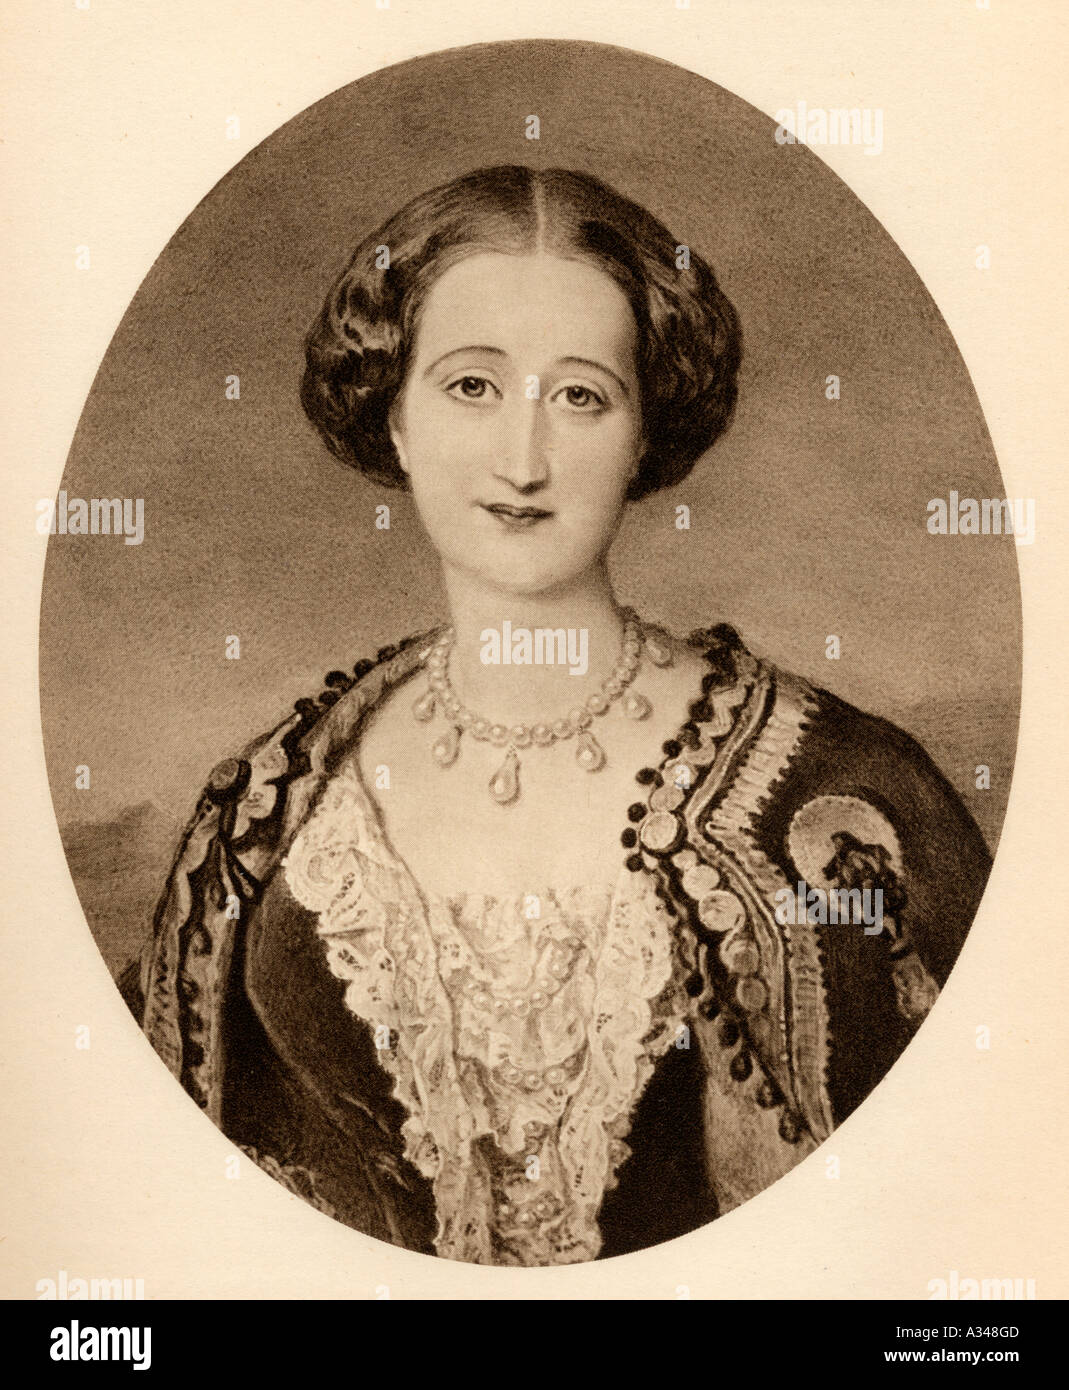 María Eugenia Ignazia Augustina de Palafox y Kirkpatrick, XVI Contessa di Teba, xv Marchesa di Ardales, 1826 - 1920. Foto Stock